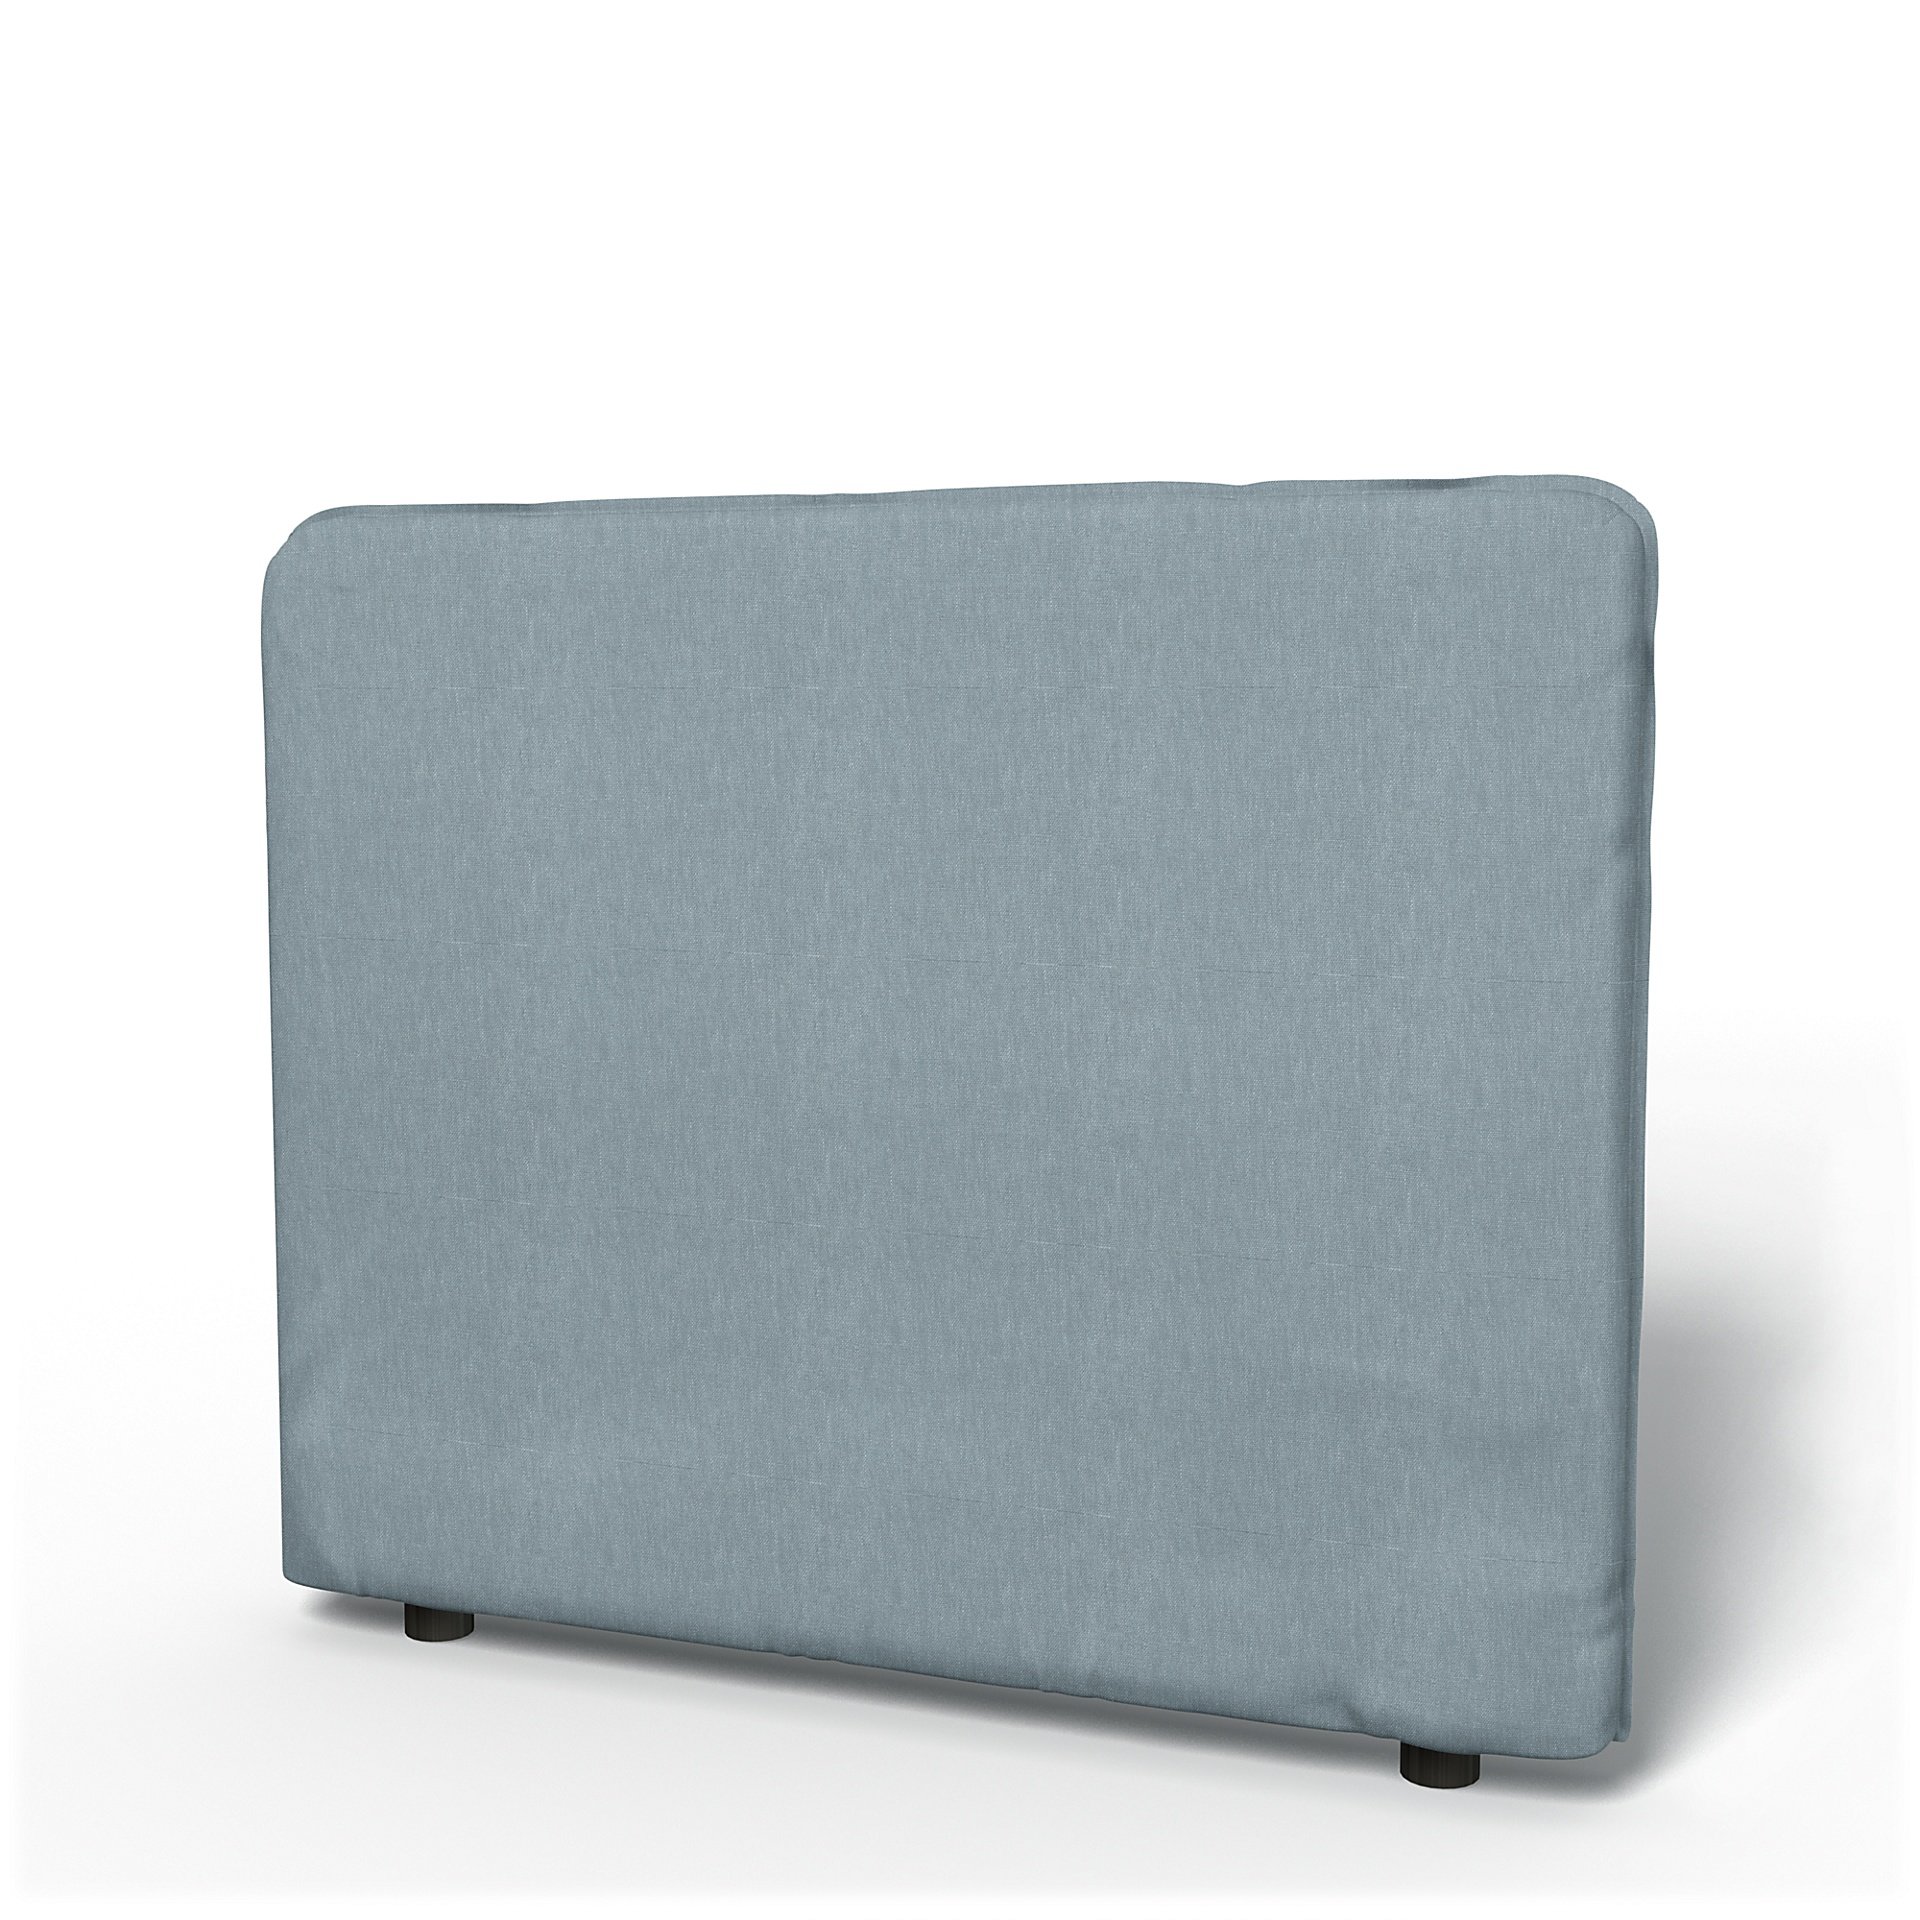 IKEA - Vallentuna Low Backrest Cover 100x80cm 39x32in, Dusty Blue, Linen - Bemz